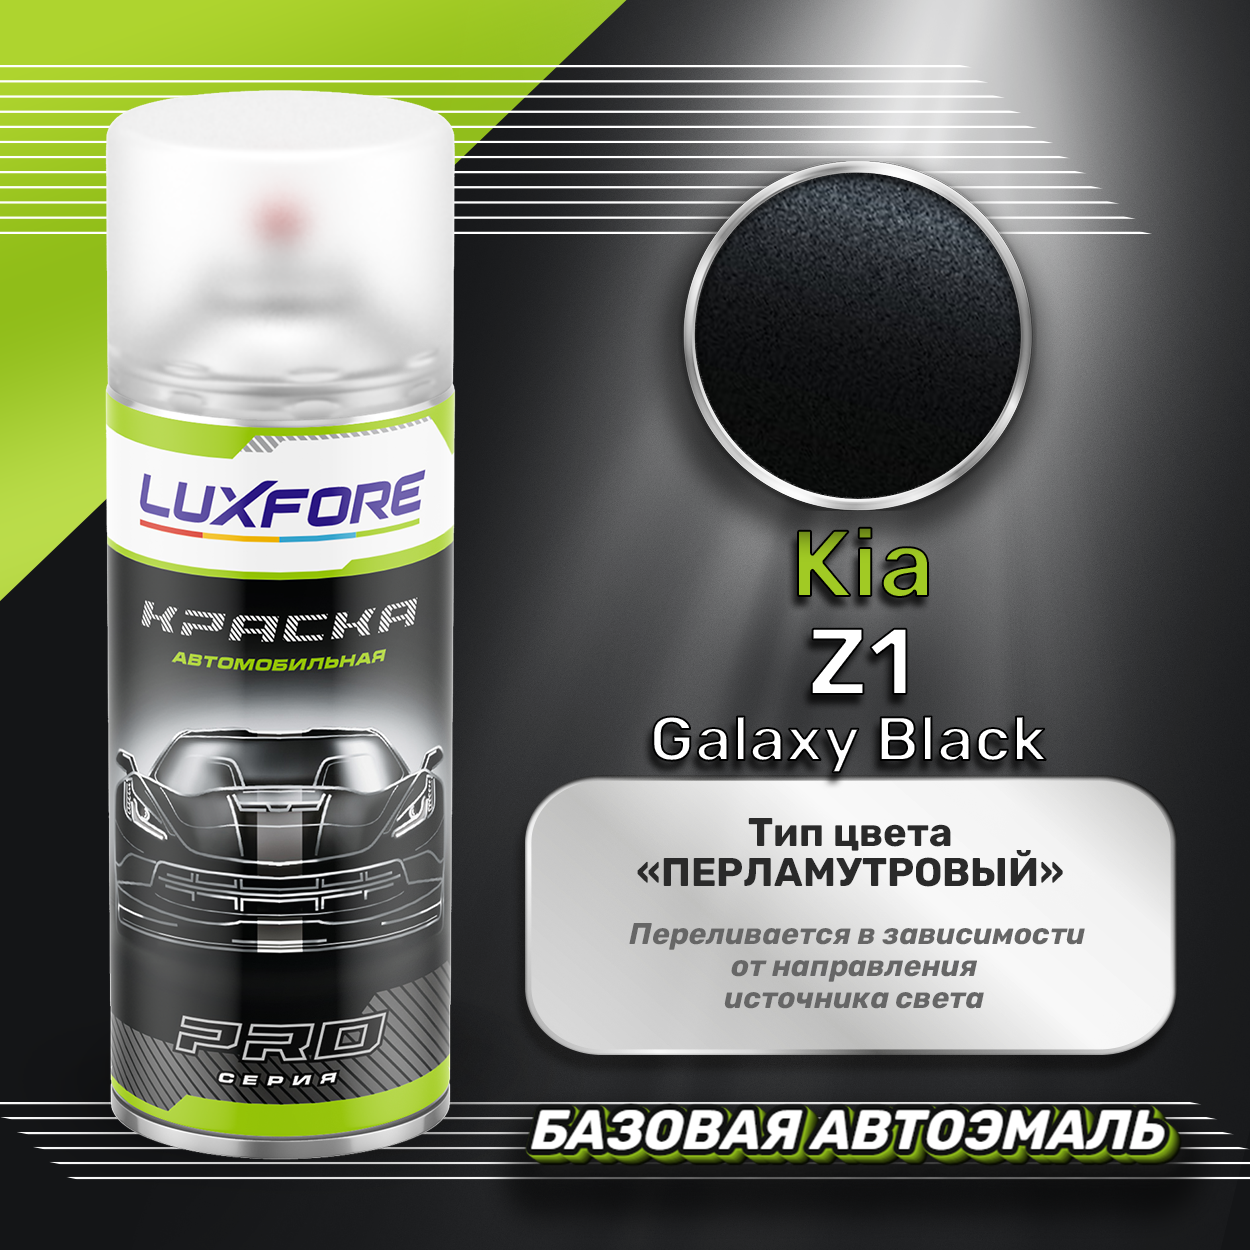 Luxfore аэрозольная краска Kia Z1 Galaxy Black 400 мл